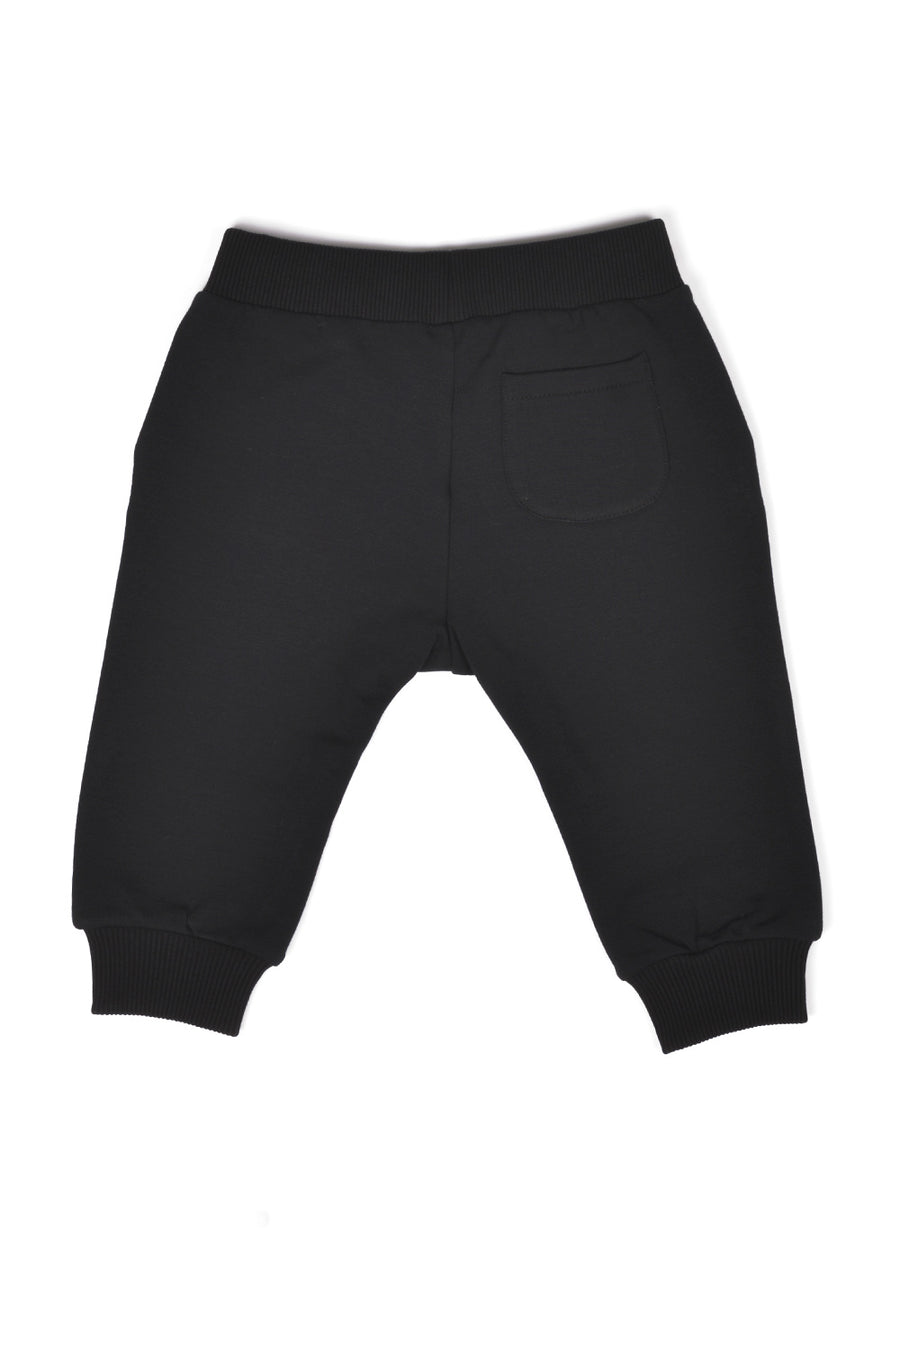 Pantalone tuta nero logo double question mark